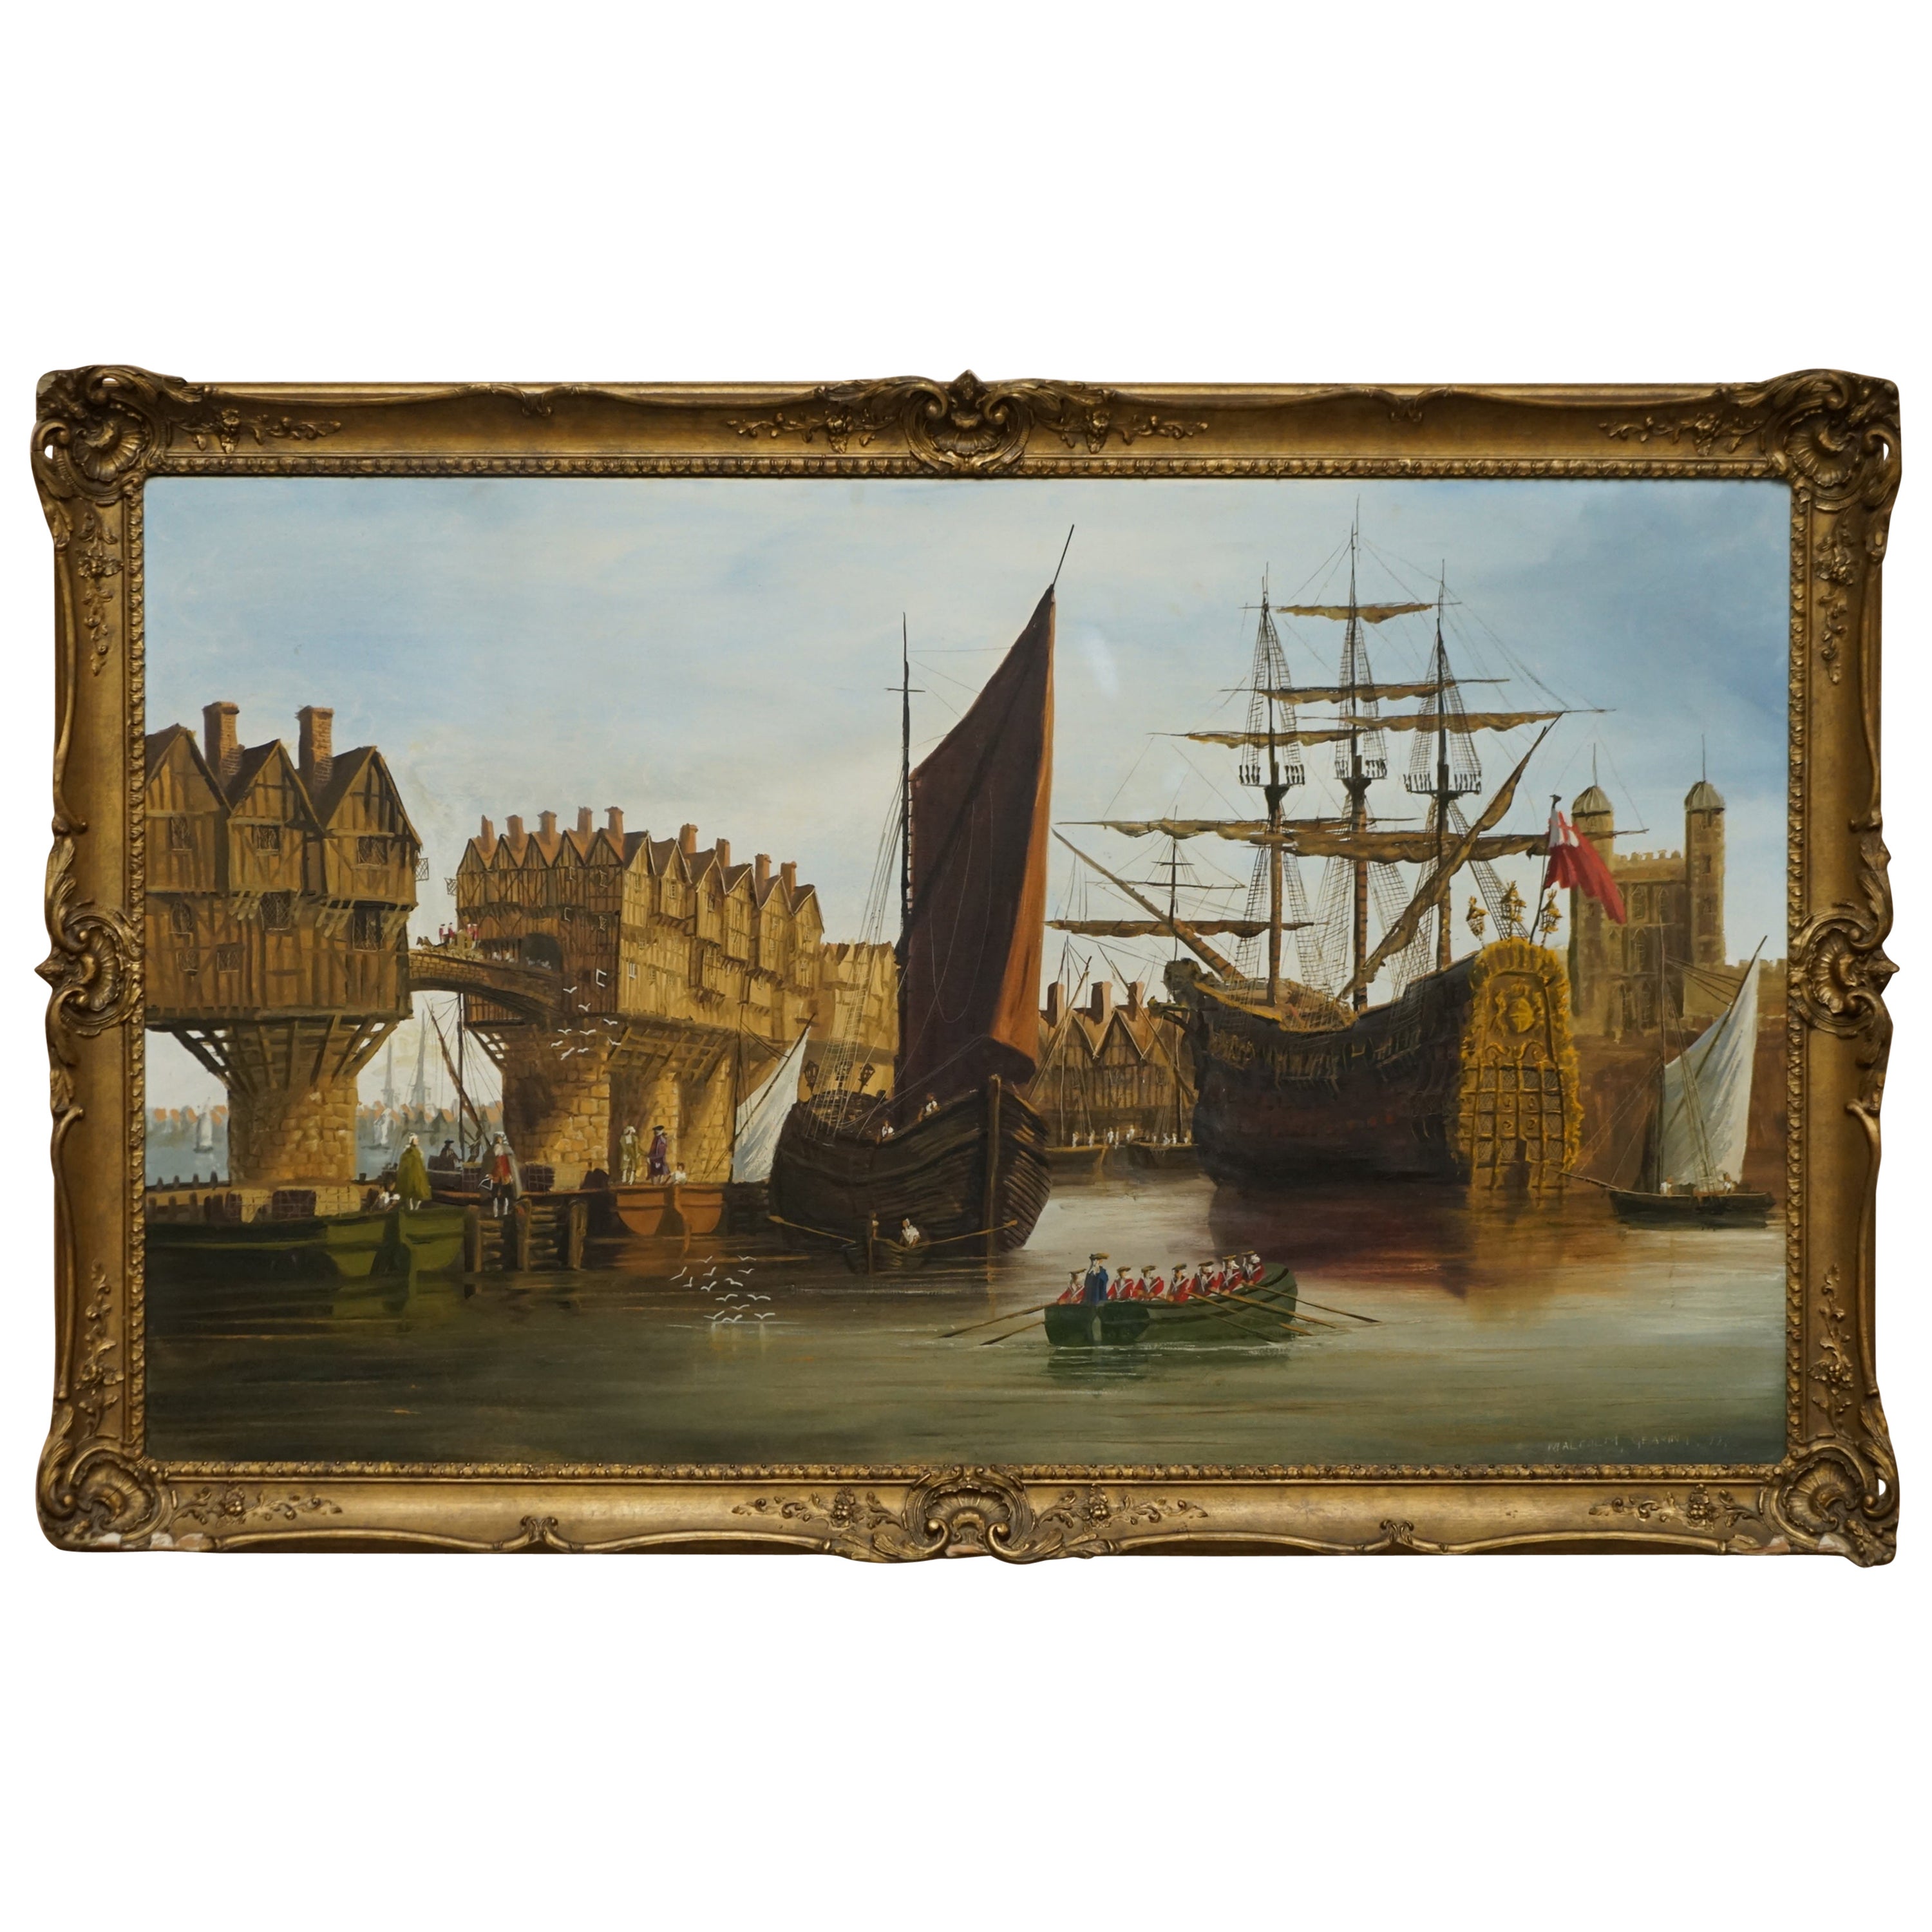 Großes dekoratives Ölgemälde auf Leinwand mit einer viktorianischen Marineszene an der Themse im Angebot